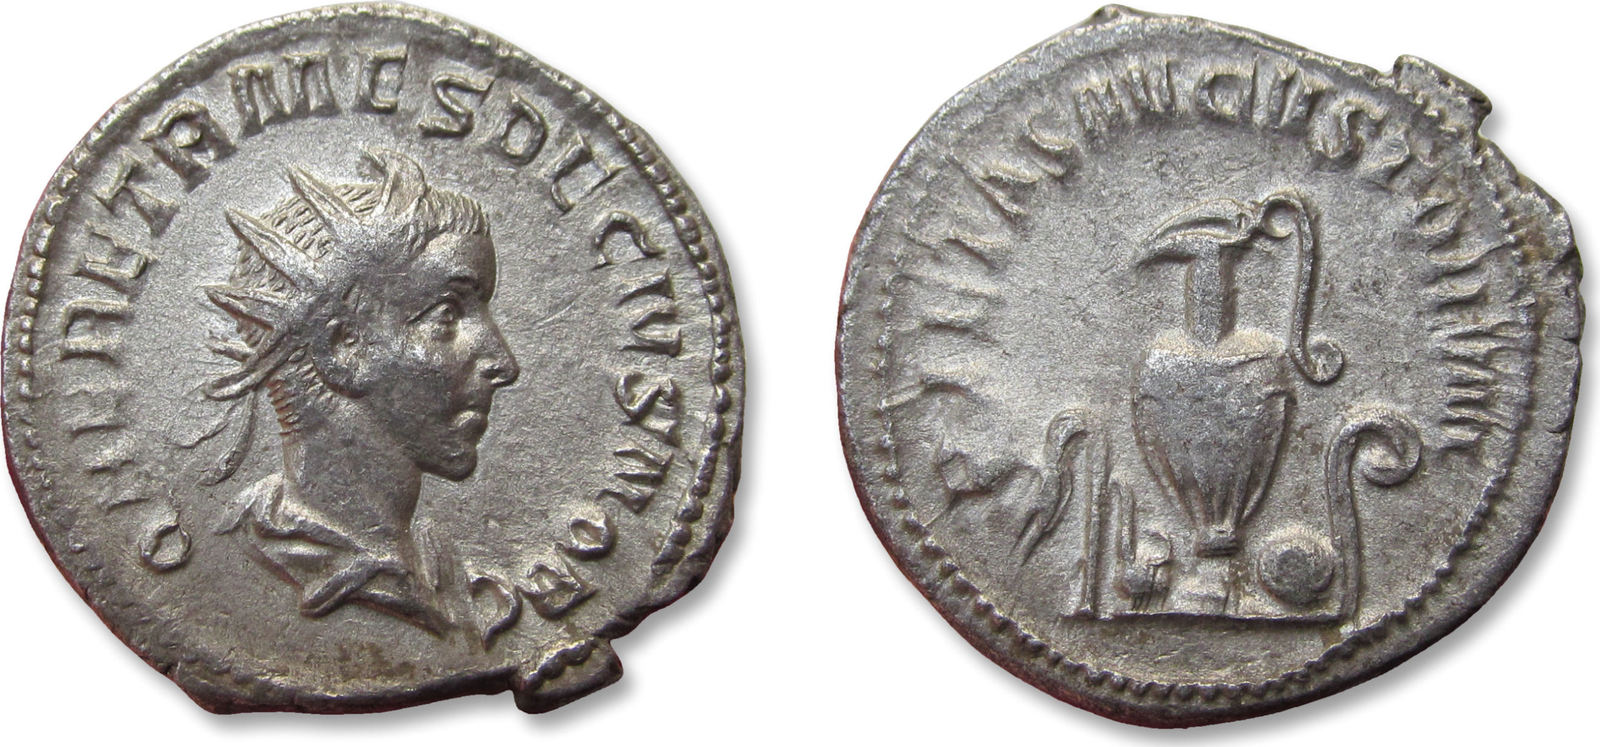 ostiarius latin